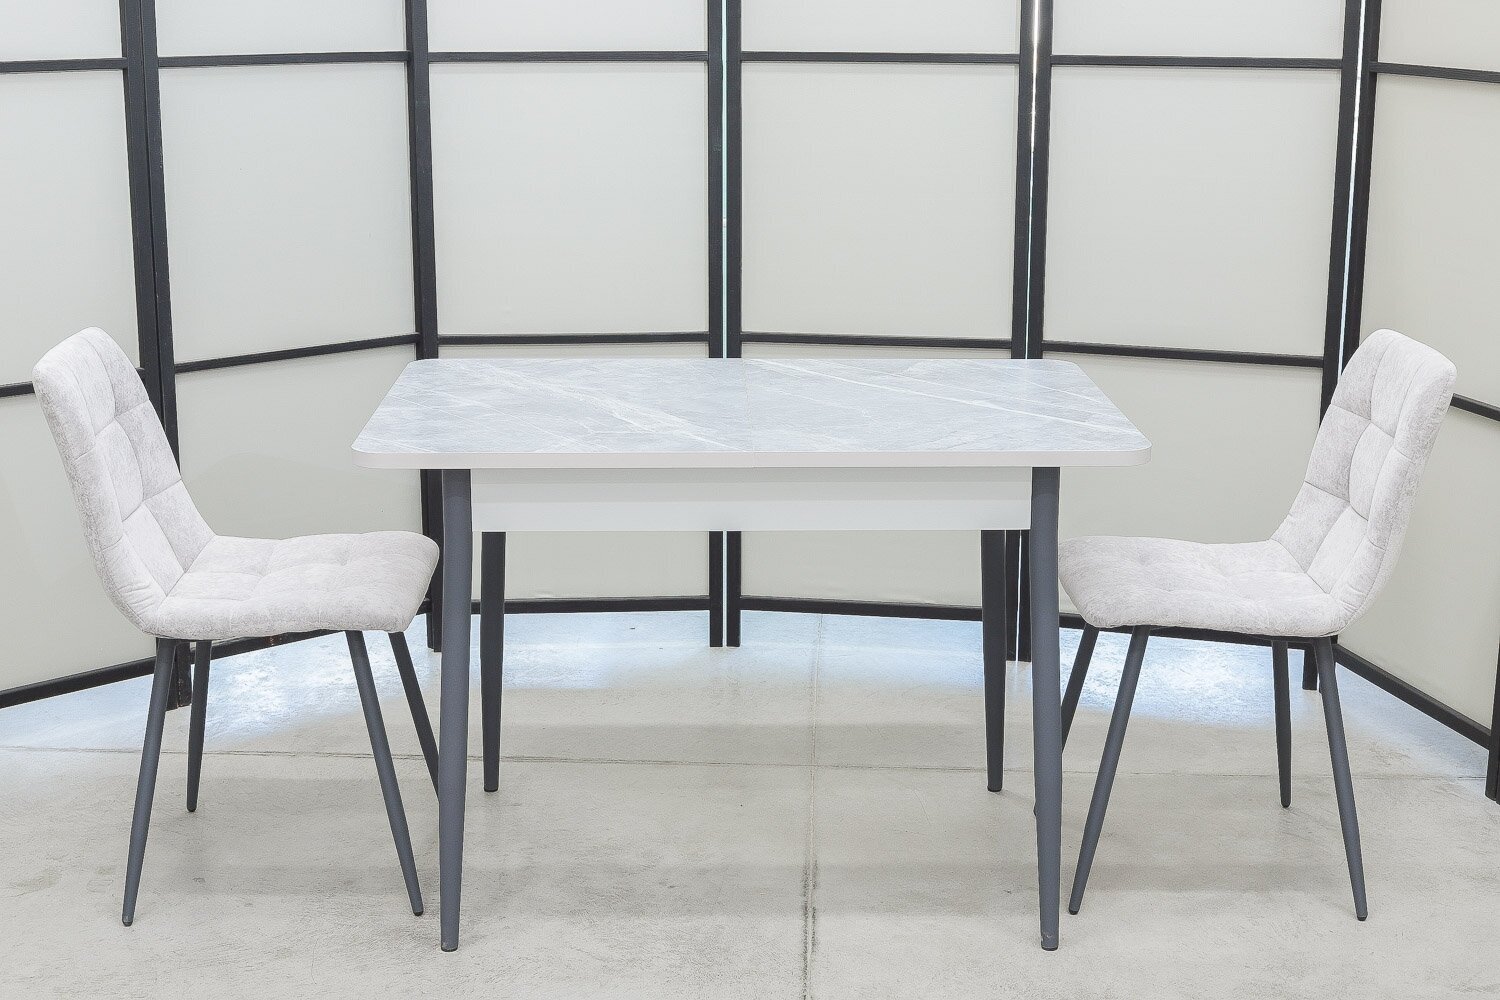 Обеденная группа Ост Дуо, стол термопластик, 110(140)х70 см, обивка стульев антивандальная, моющаяся, антикоготь, цвет светло-серый